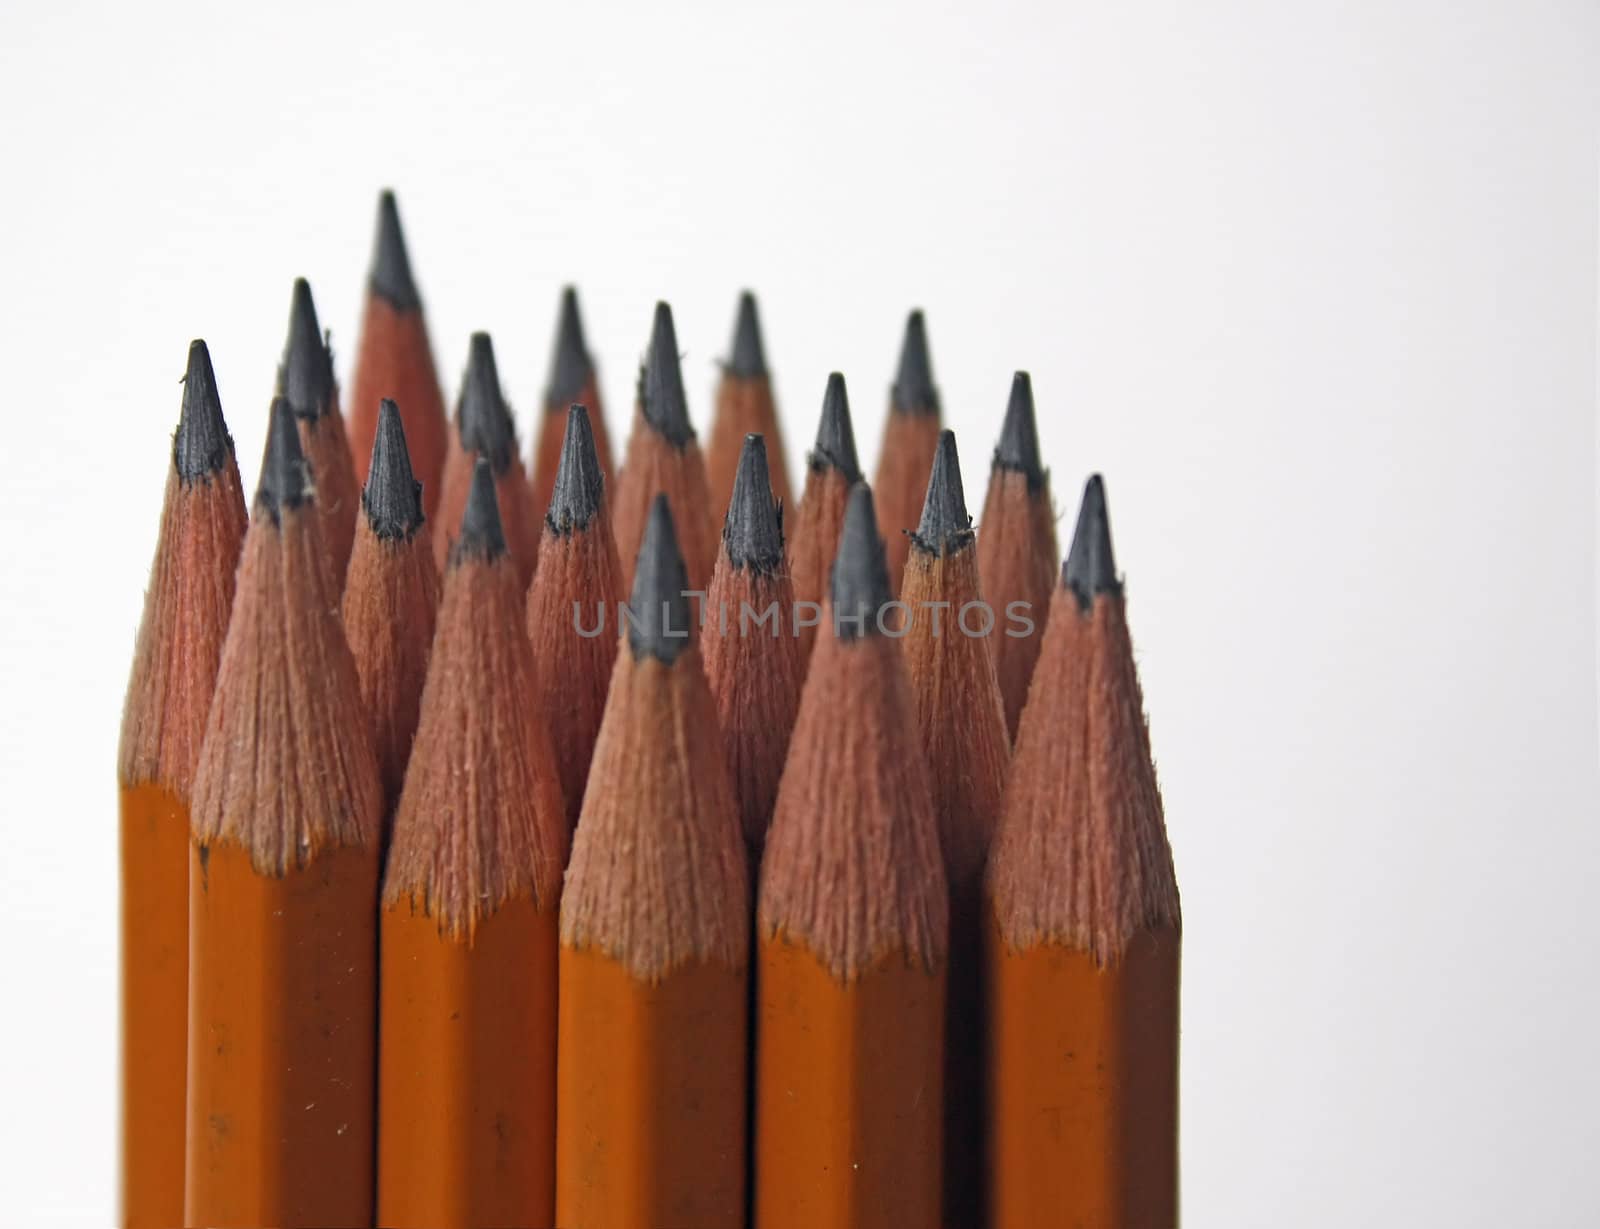 Pencils by zhannaprokopeva